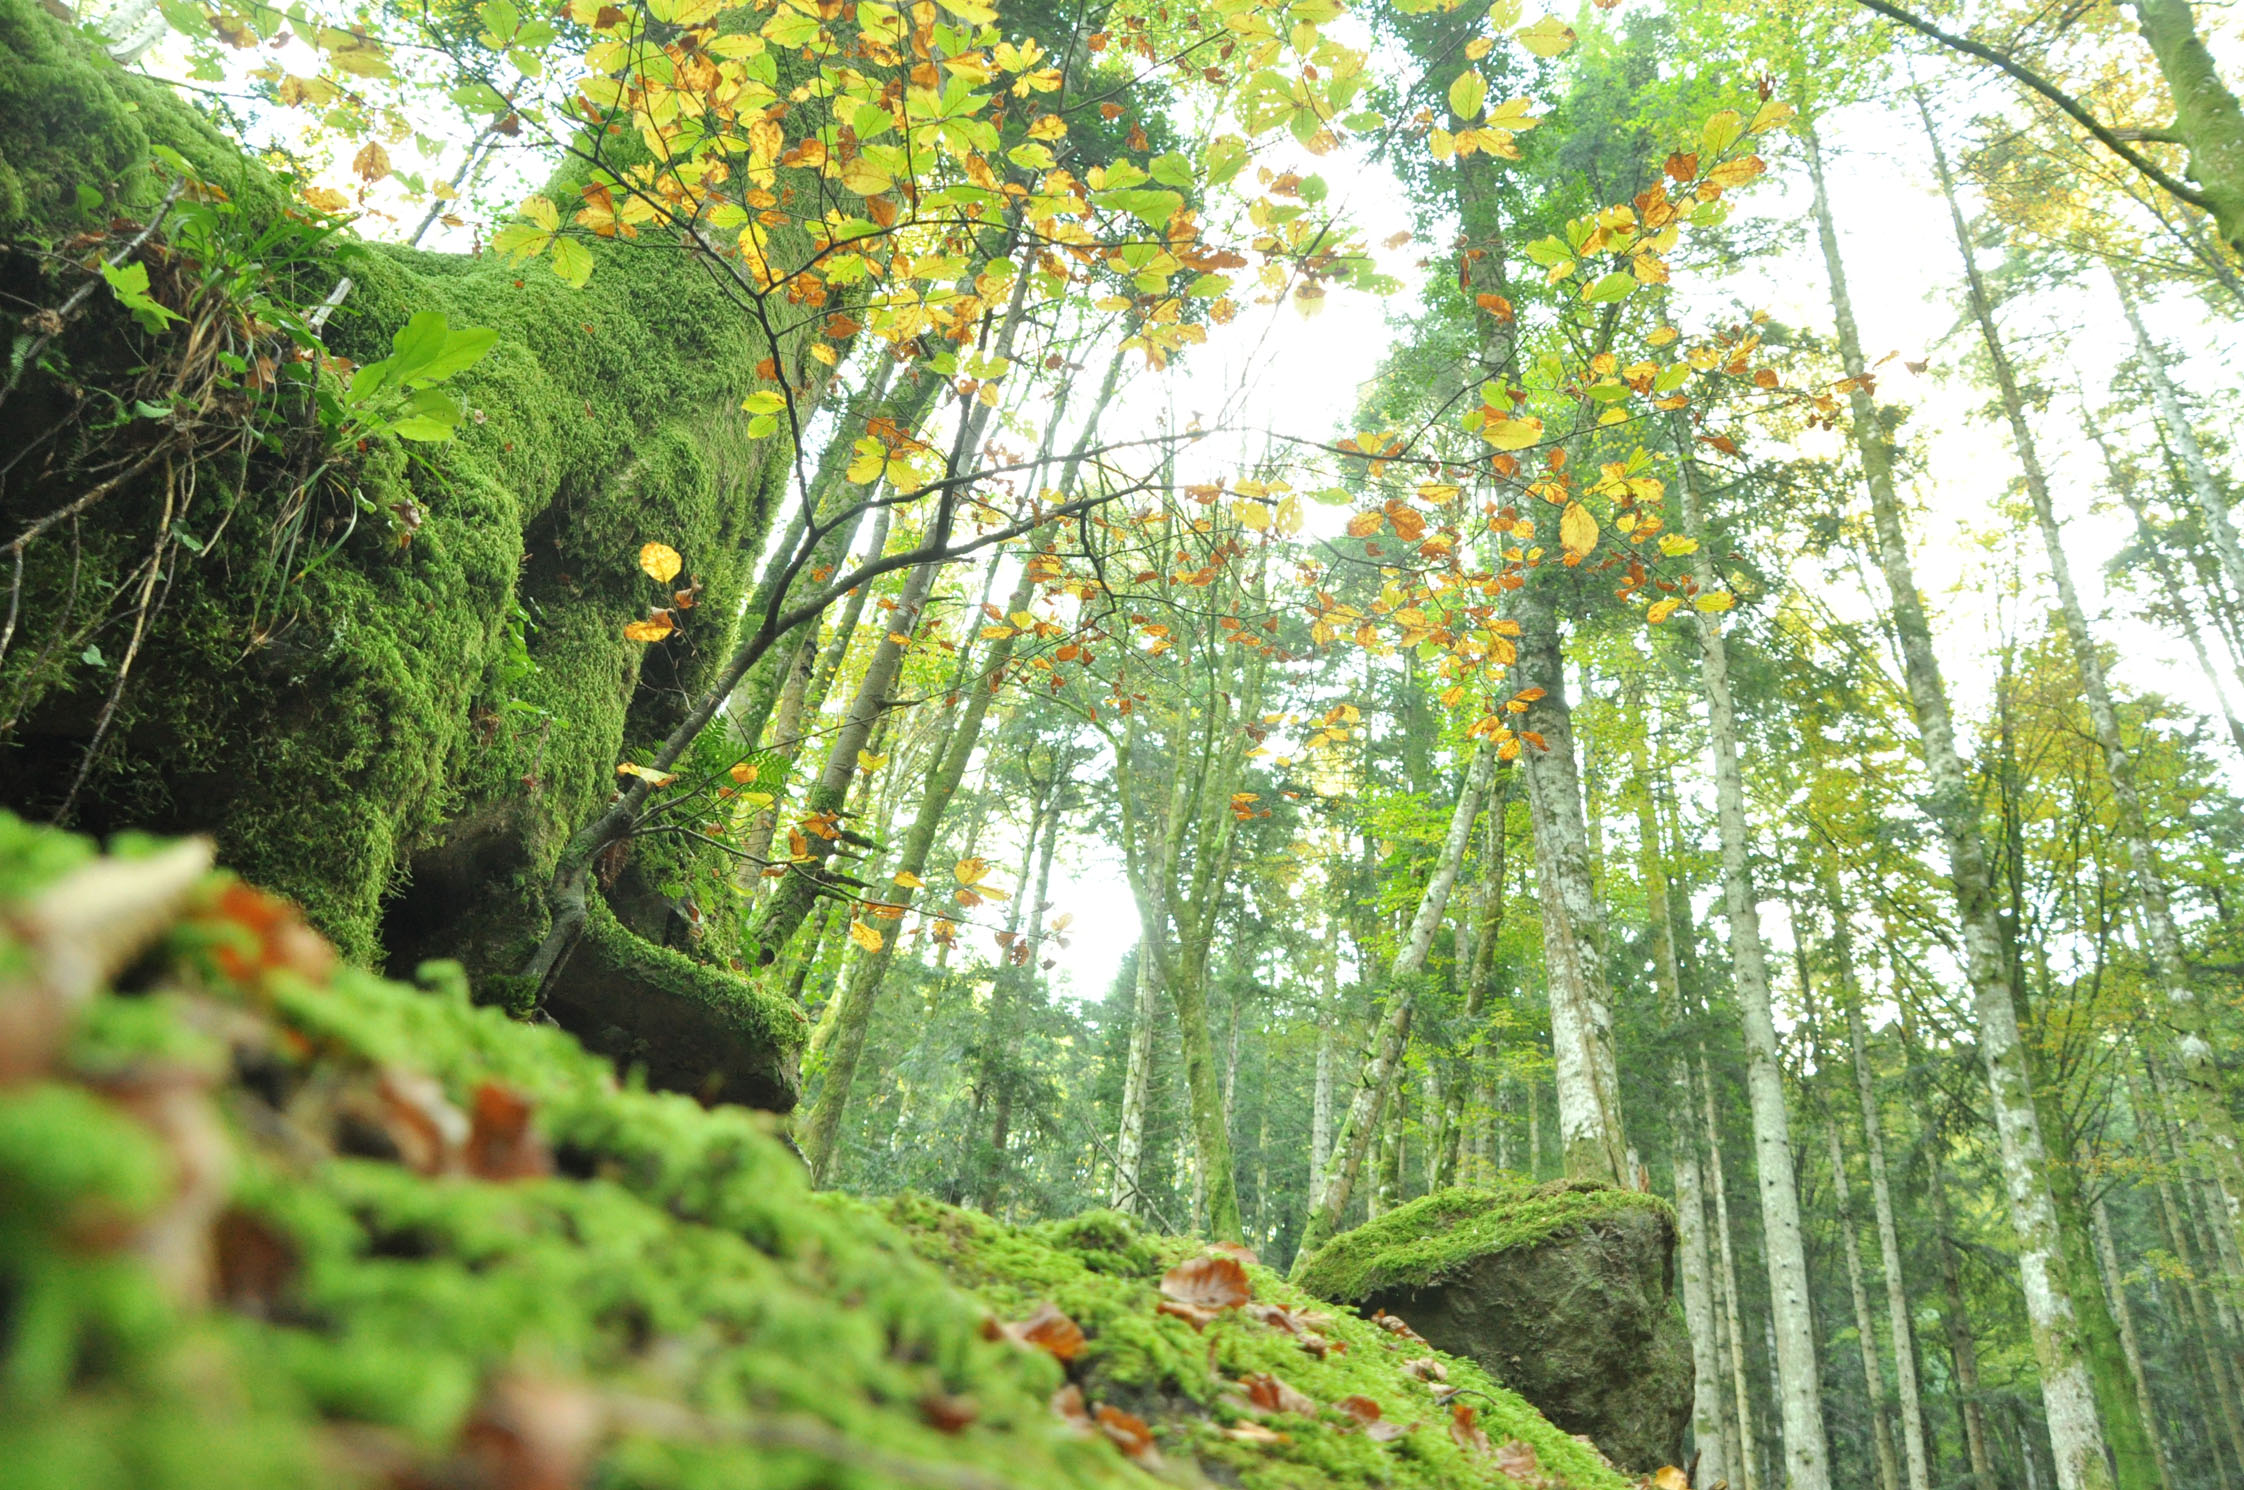 “Le radici del futuro: scoperta e cura dell’ambiente”, due giorni di riflessione nel Parco nazionale delle Foreste casentinesi